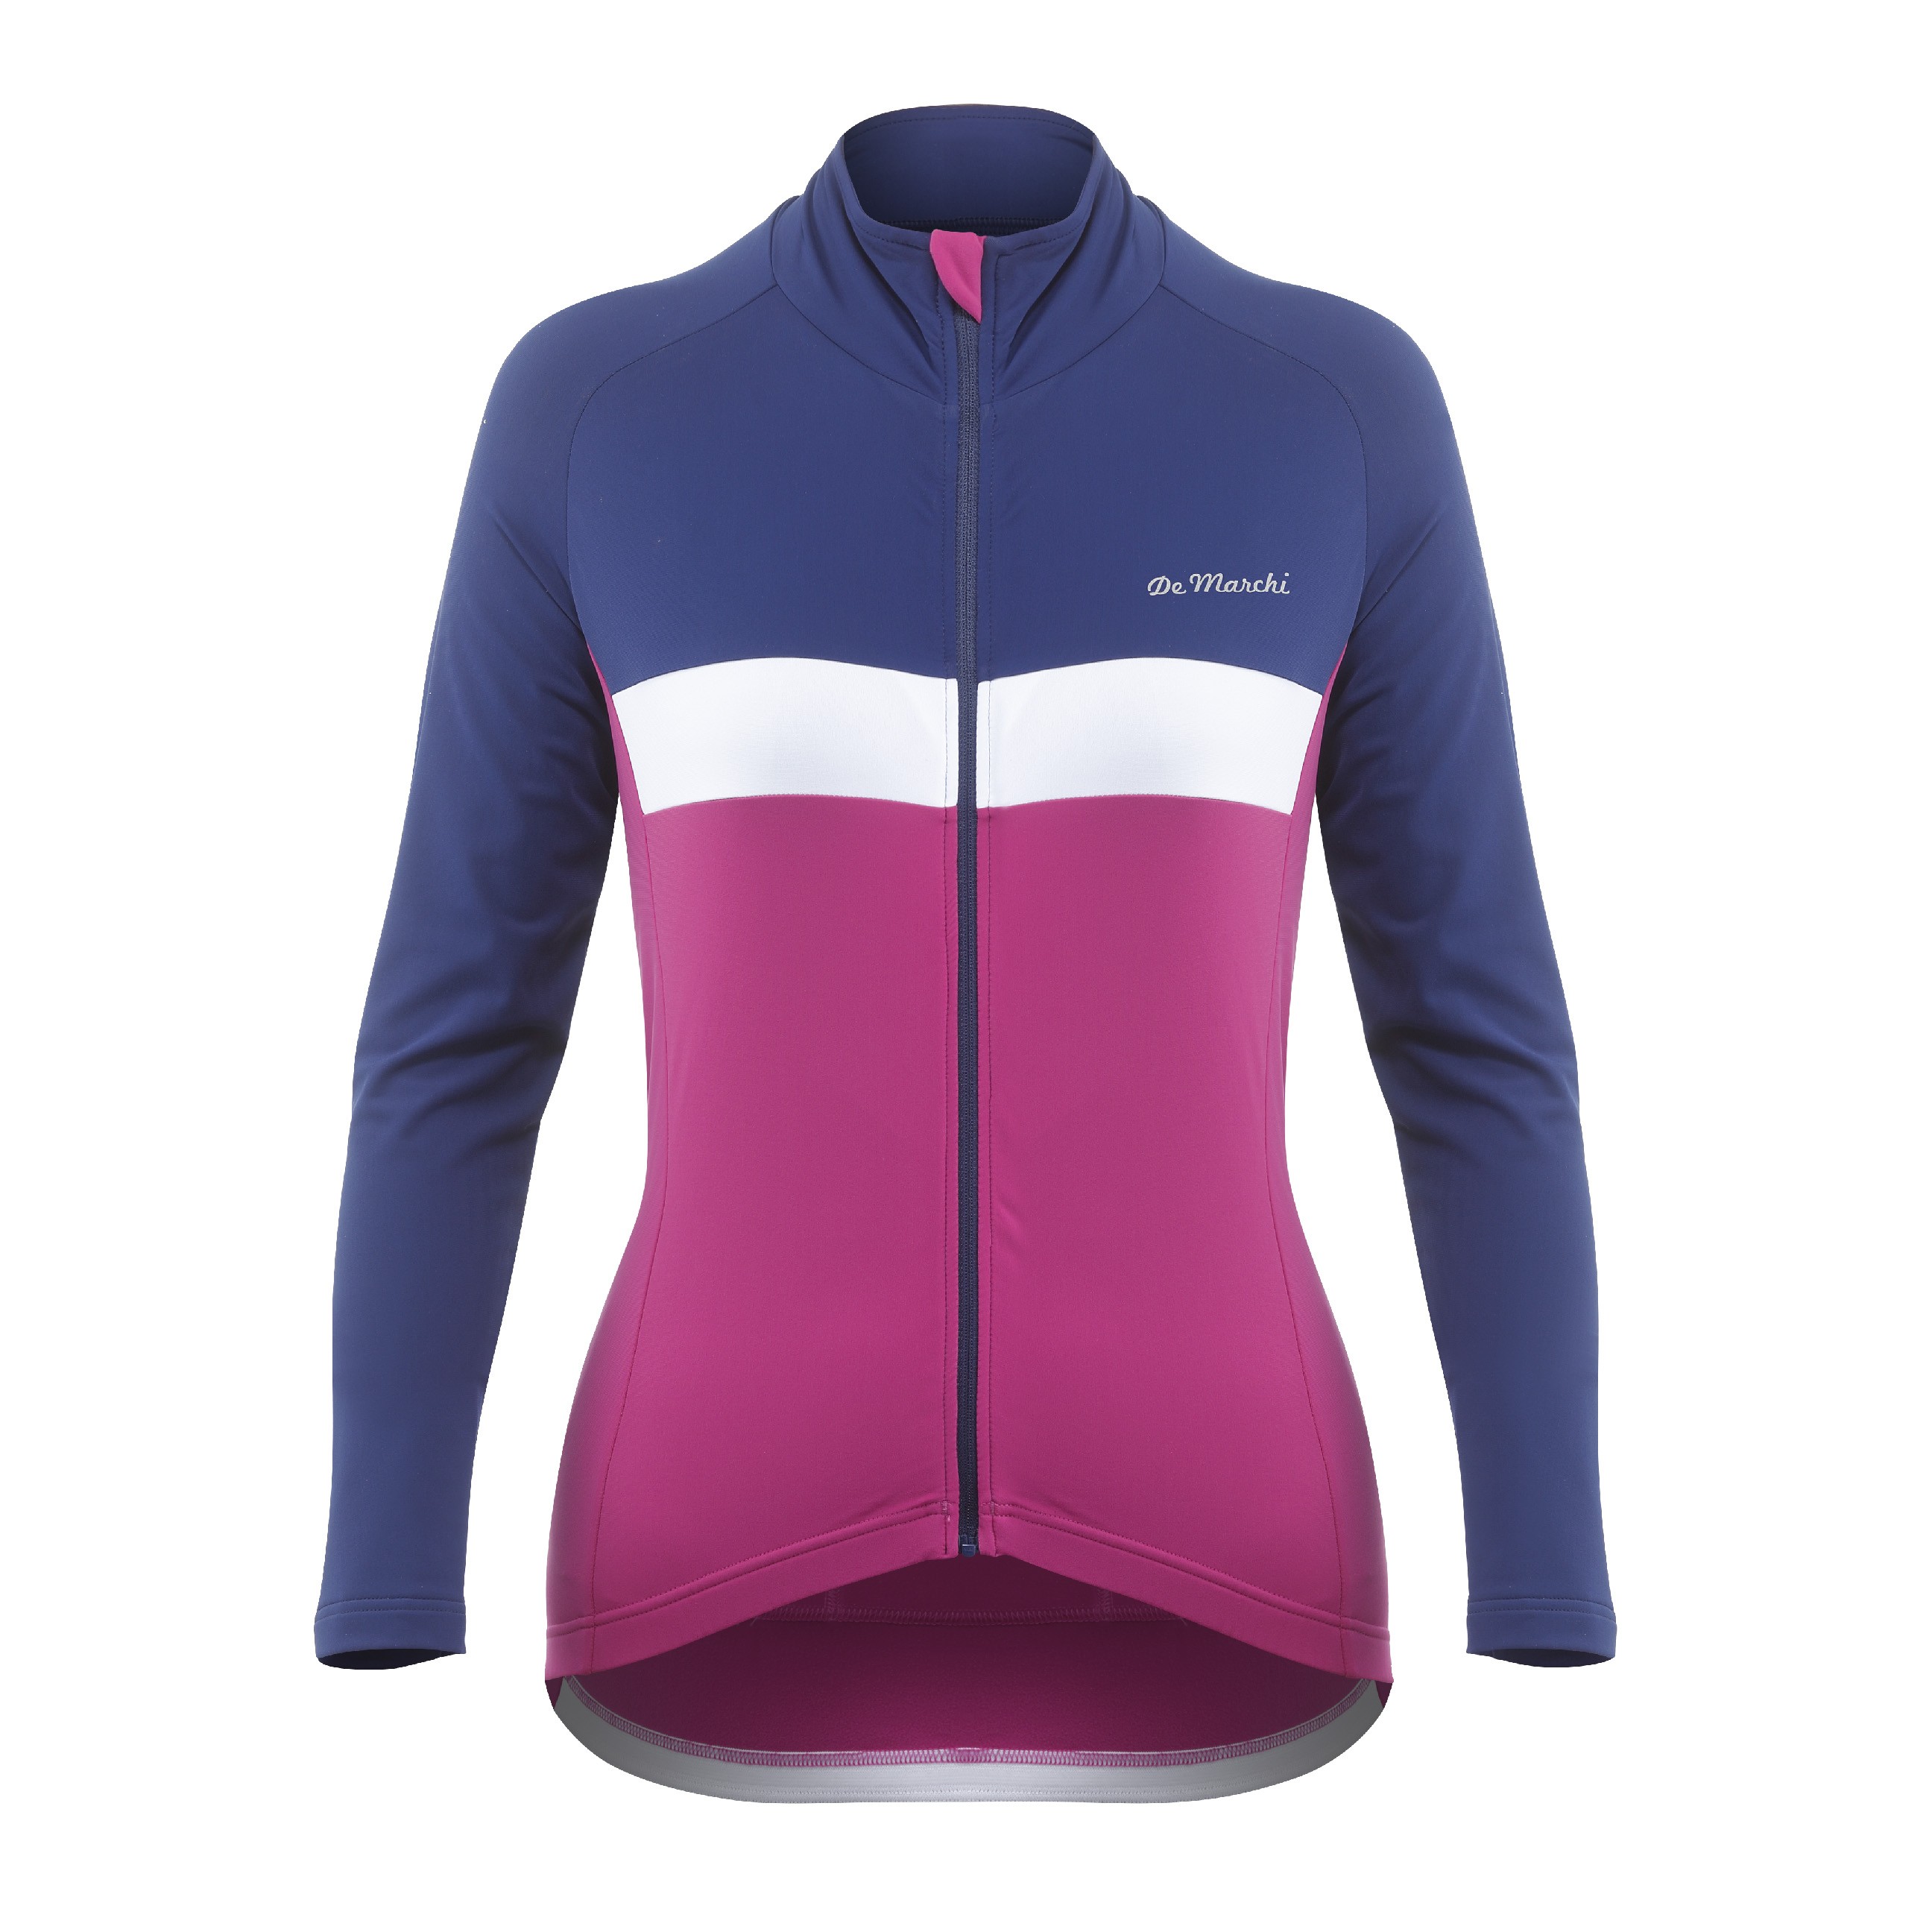 De Marchi monza roubaix light maillot de cyclisme manches longues femme navy rubine rose